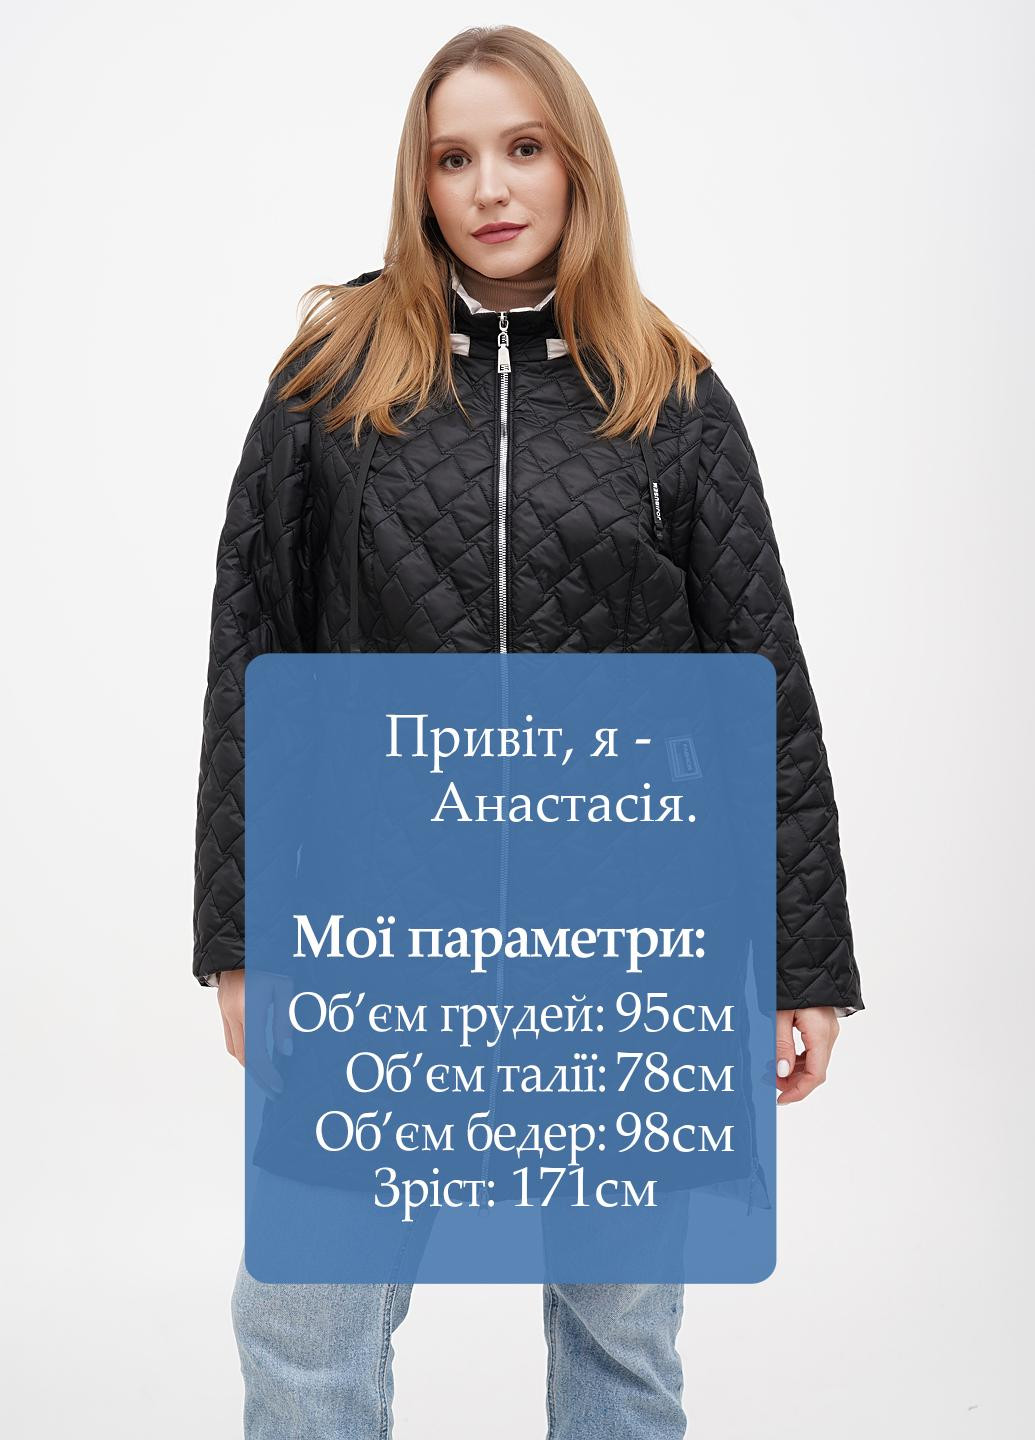 Чорна демісезонна куртка куртка-трансформер Eva Classic